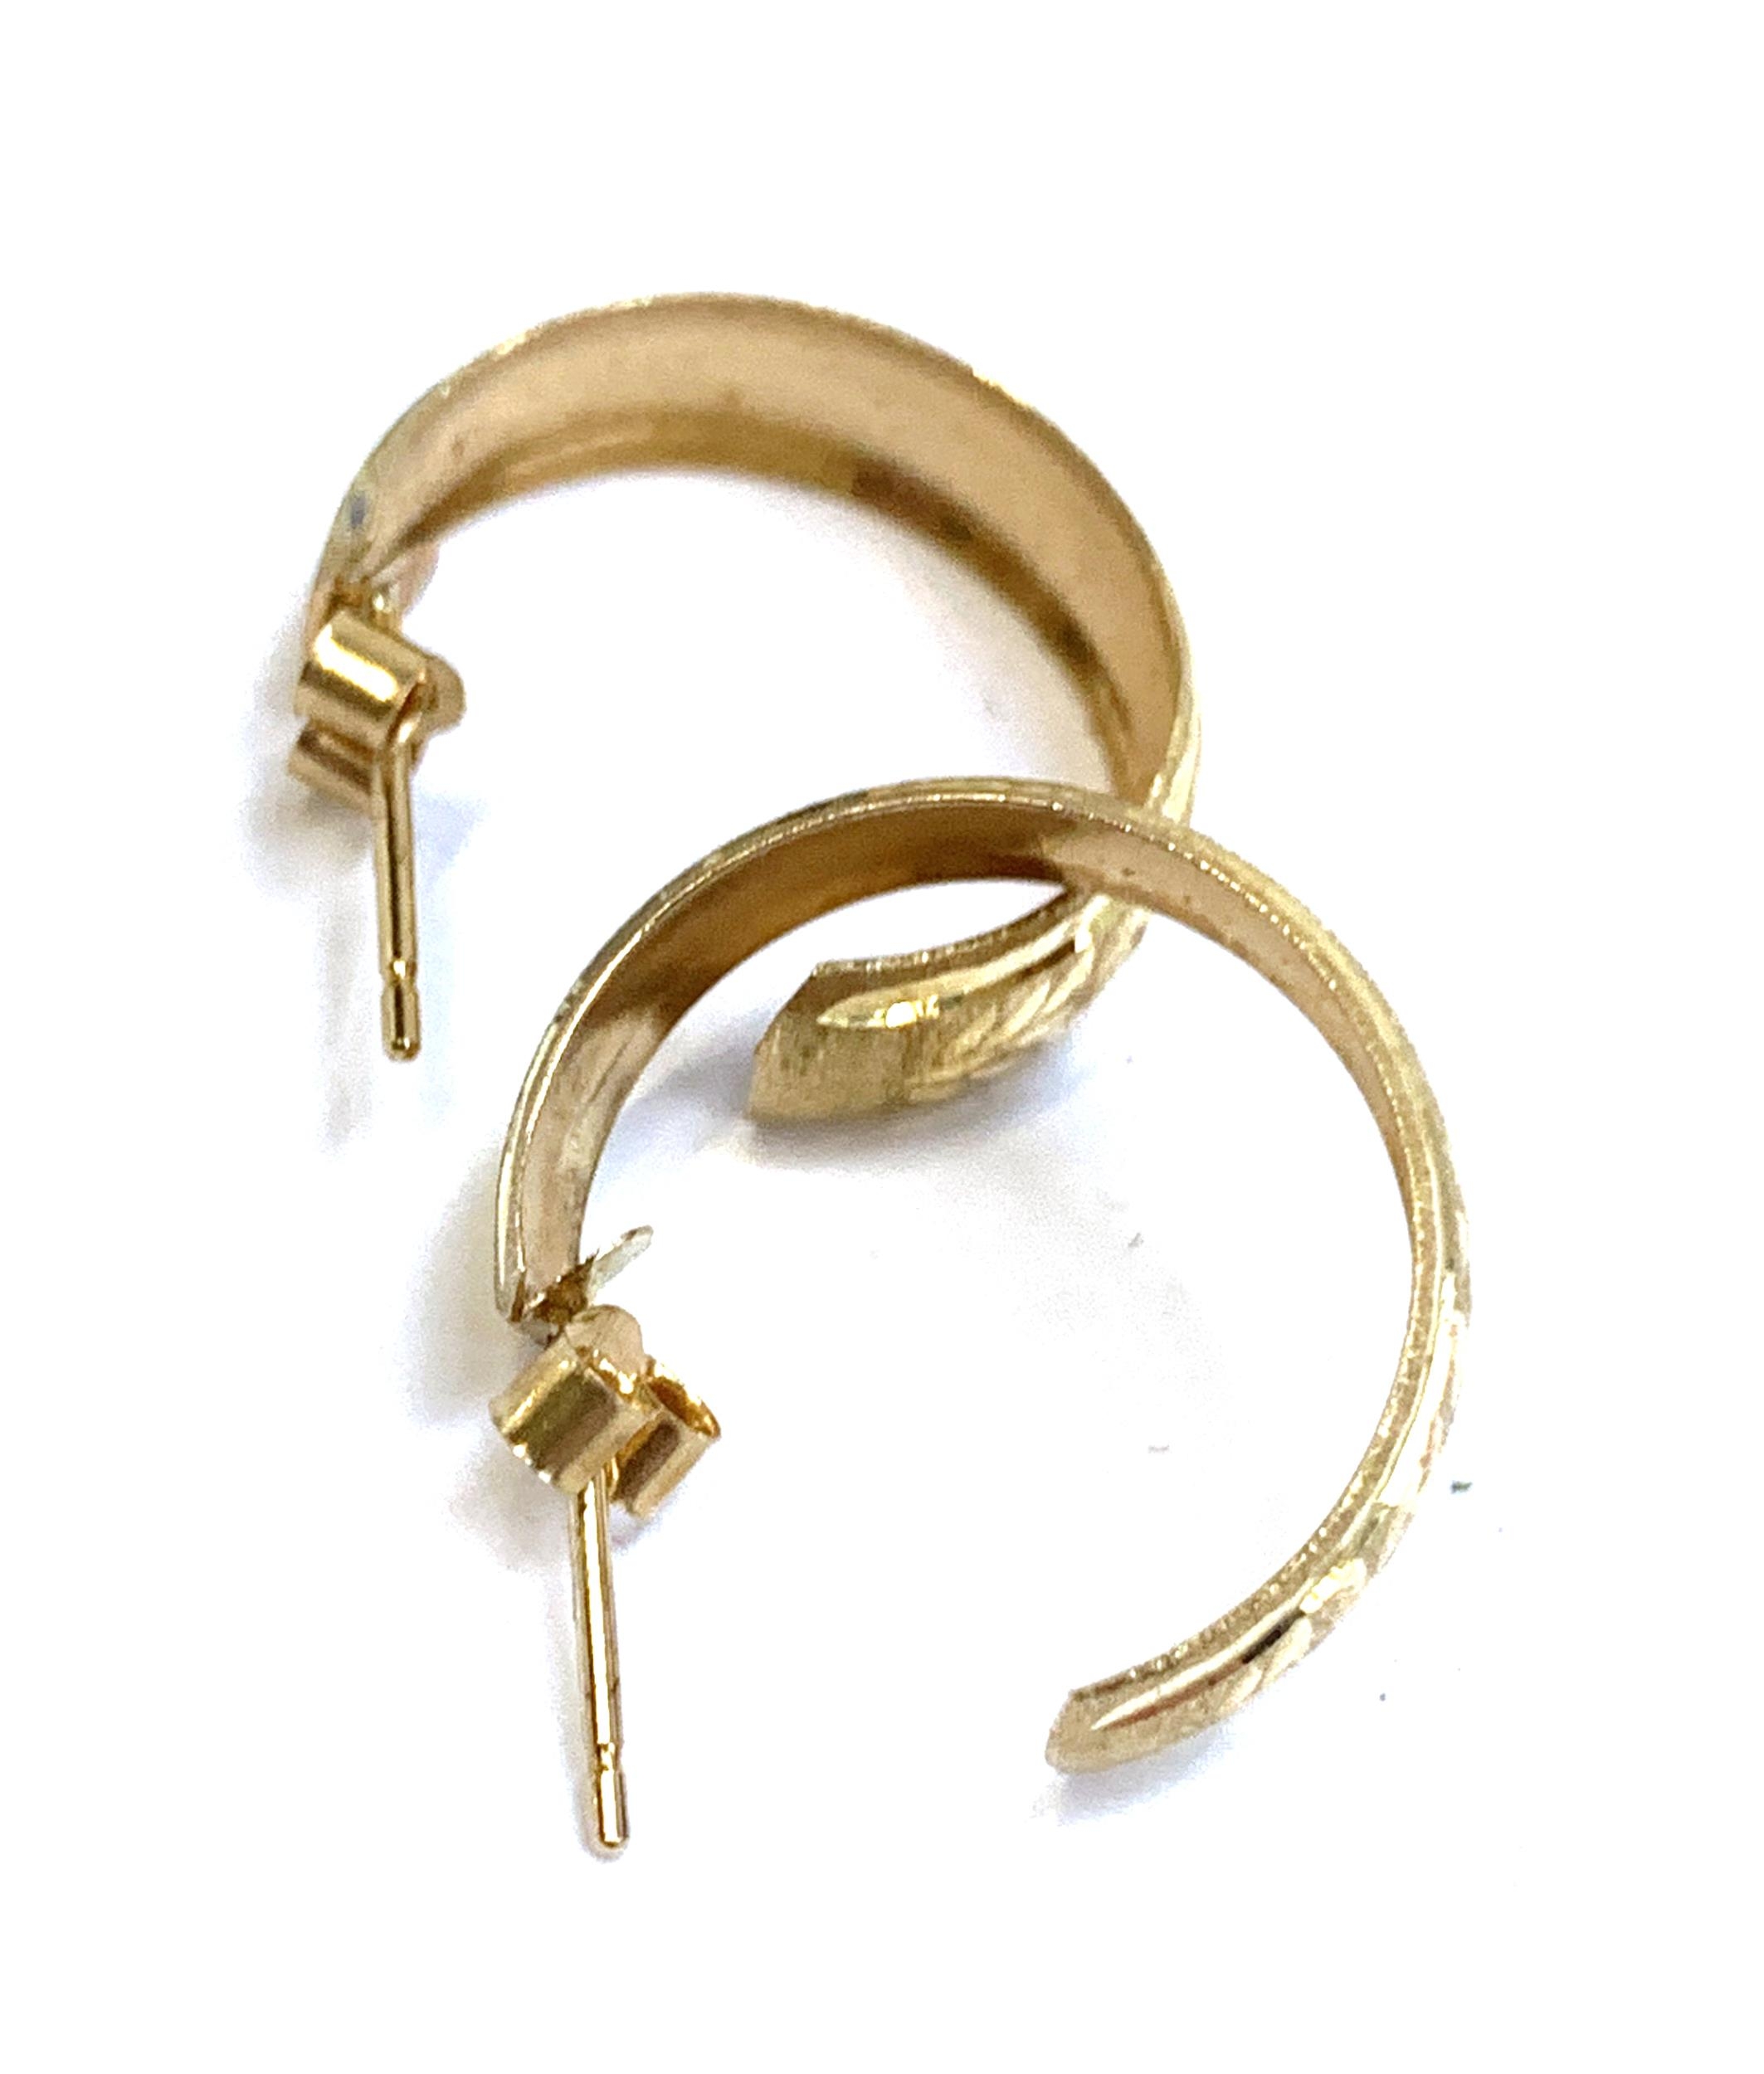 A pair of yellow metal hoop earrings, 1.1g - Image 2 of 2